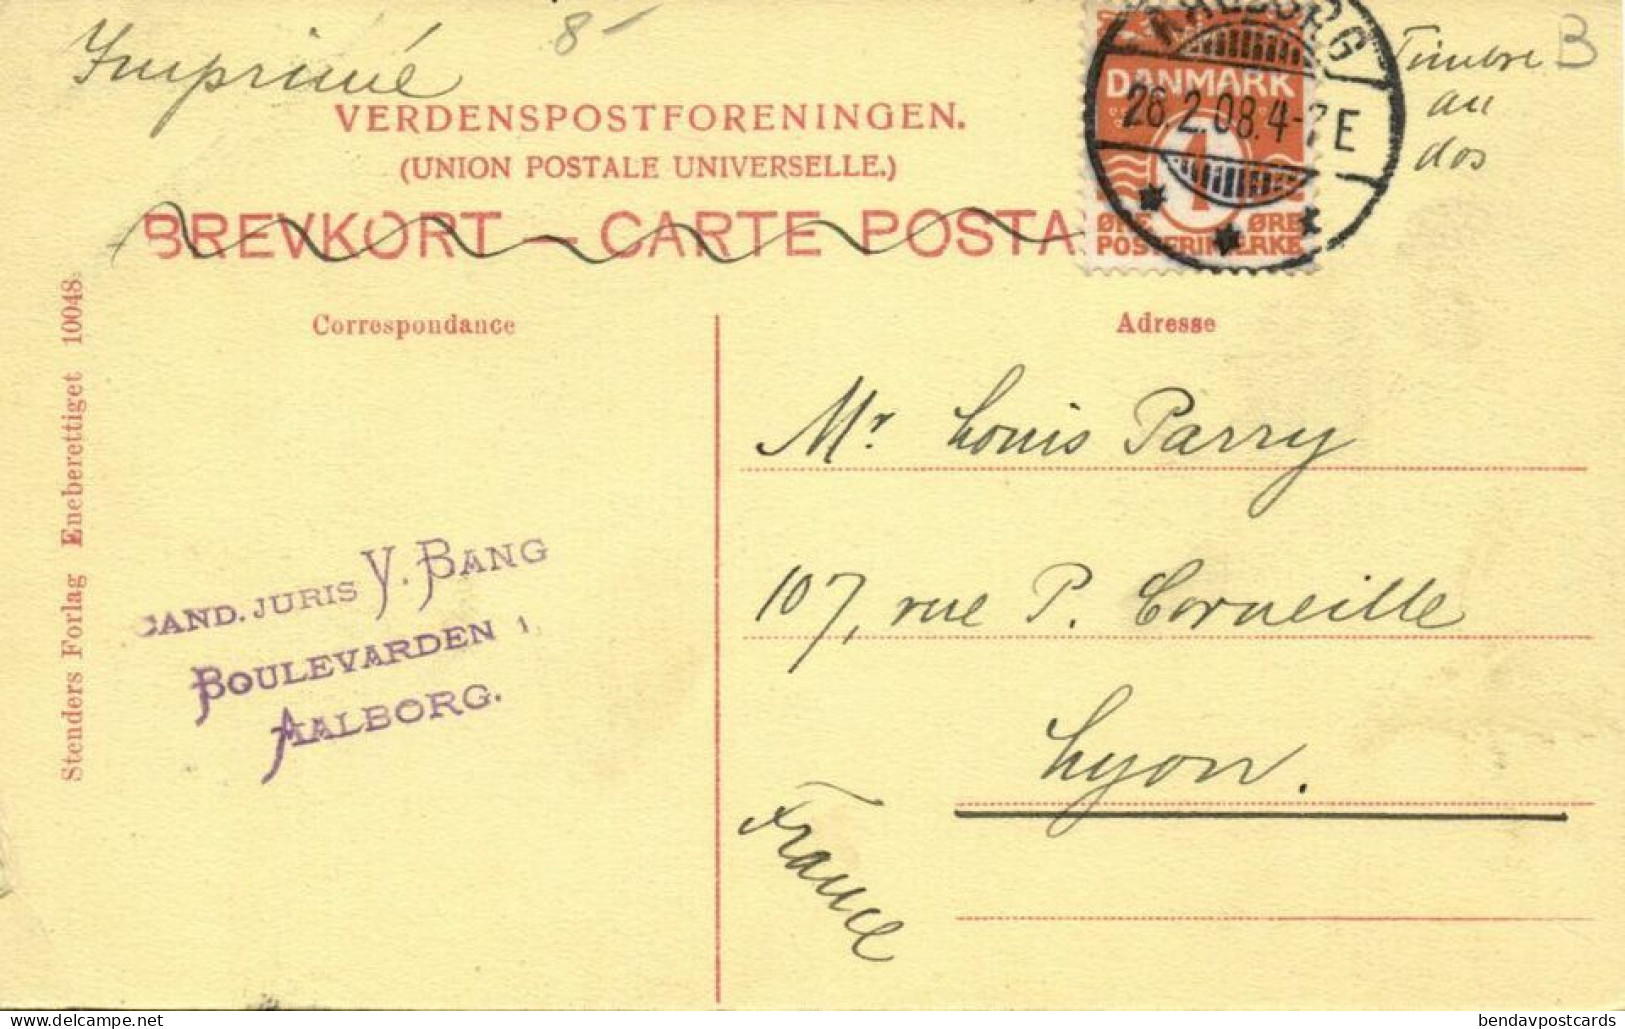 Denmark, AALBORG ÅLBORG, Lybækkergaarden (1908) Postcard - Dänemark